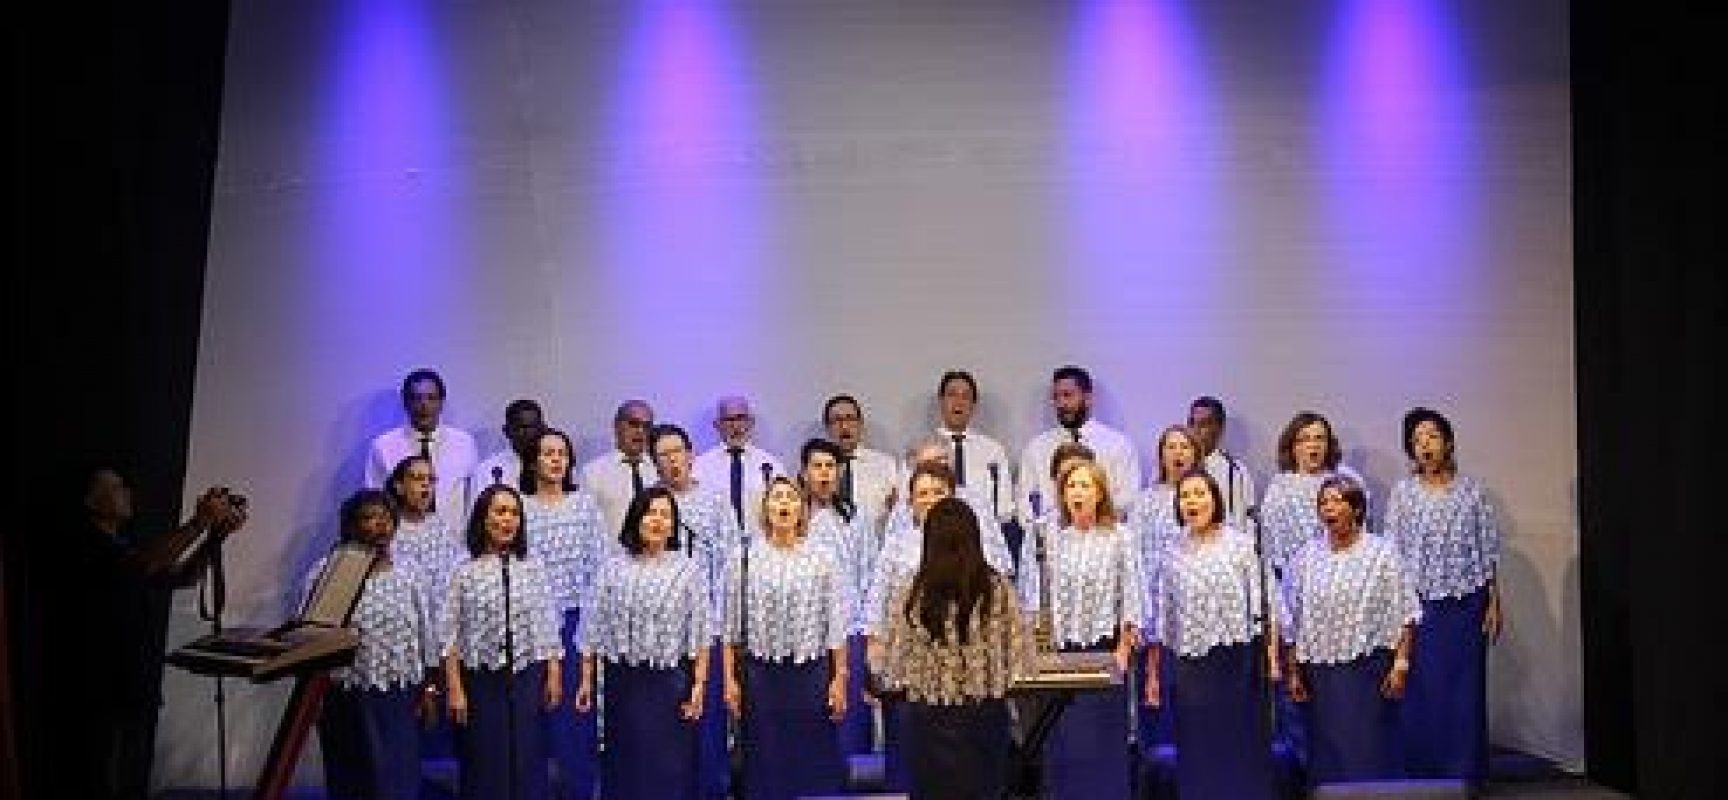 Coral dos Servidores da Ceplac comemora 20 anos com show no Teatro Municipal de Ilhéus